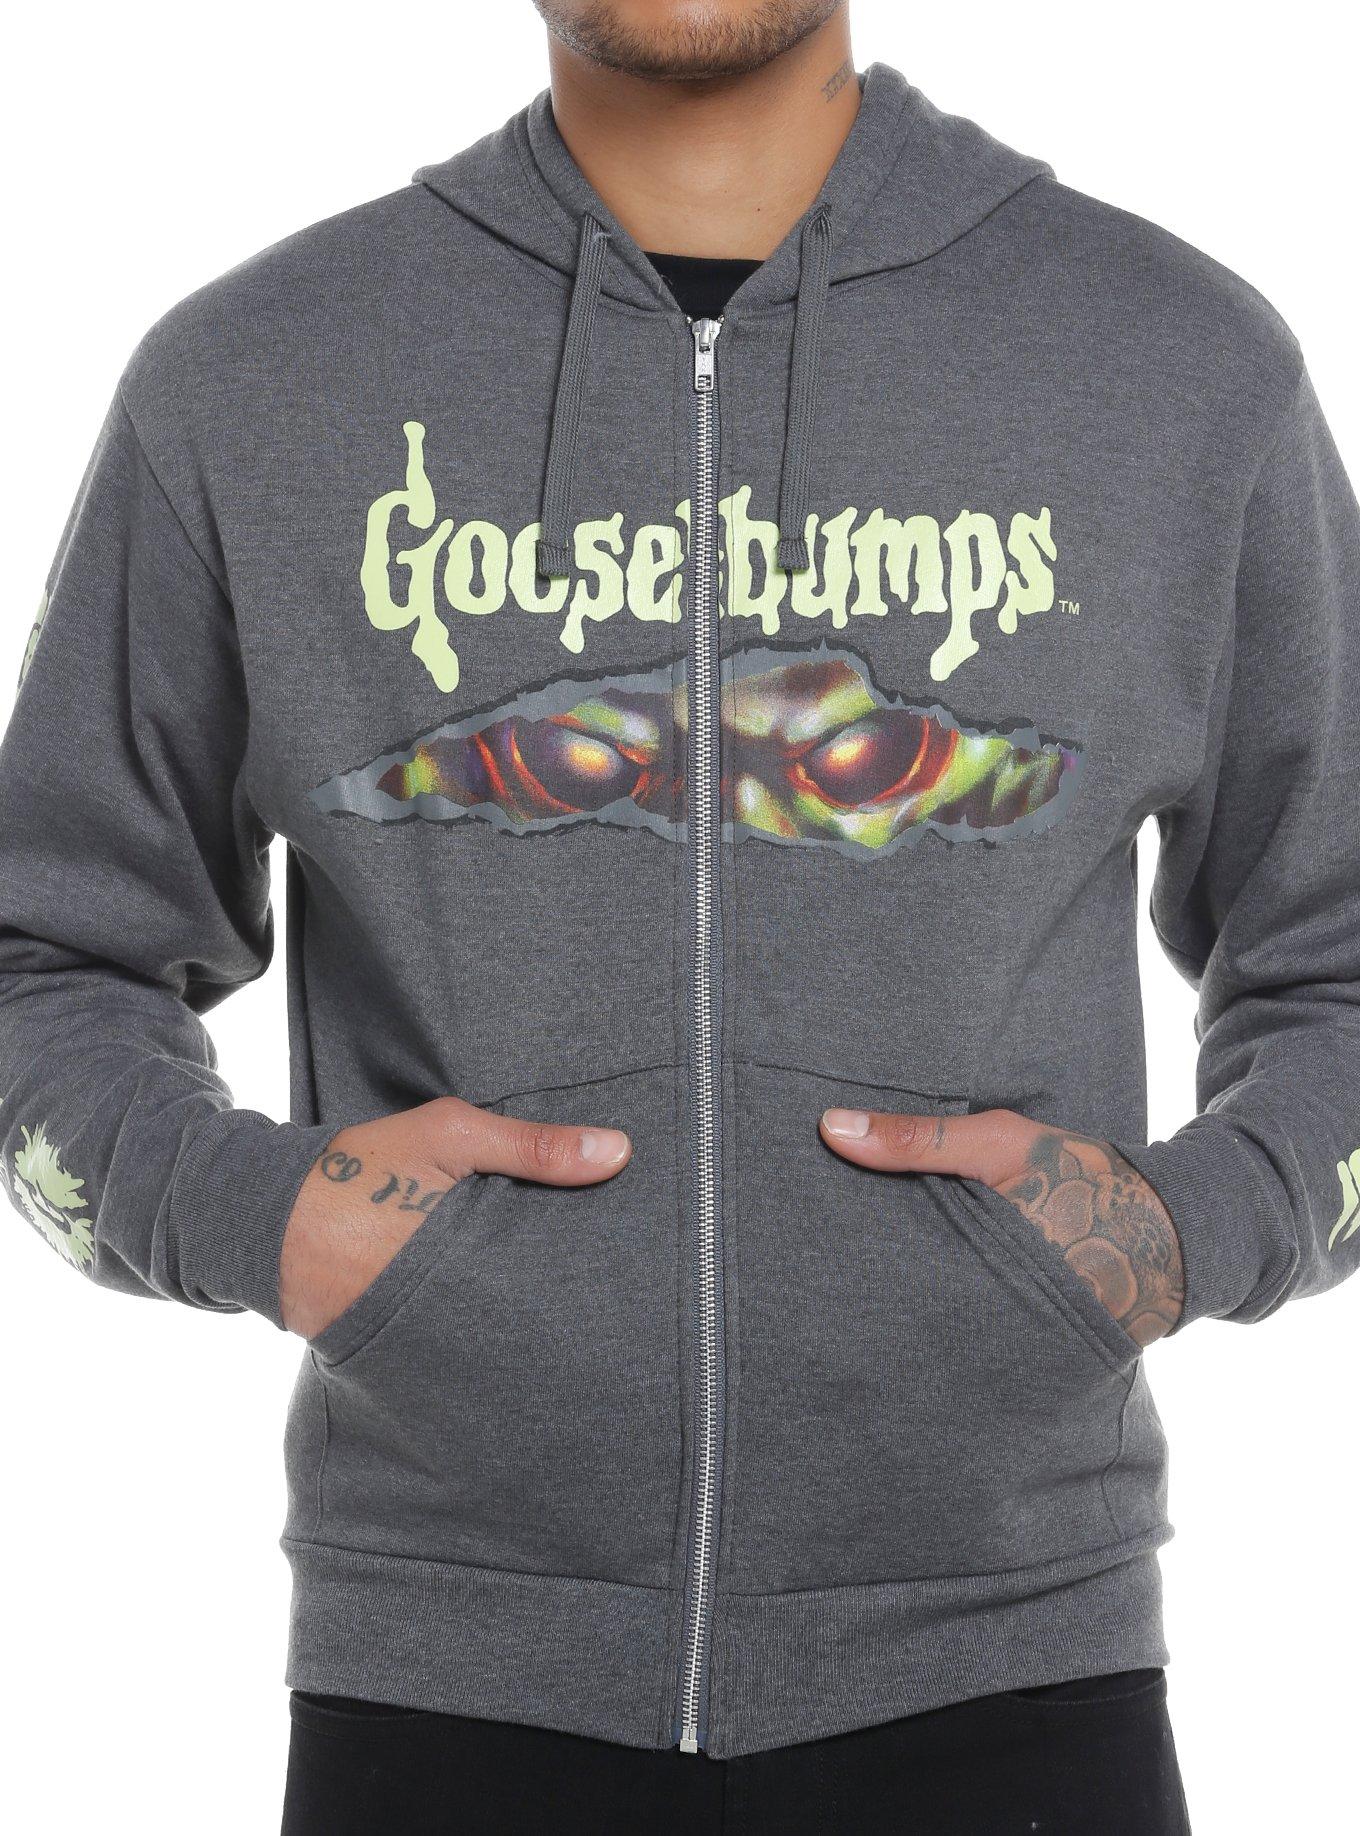 Goosebumps The Haunted Mask Hoodie, GREY, hi-res